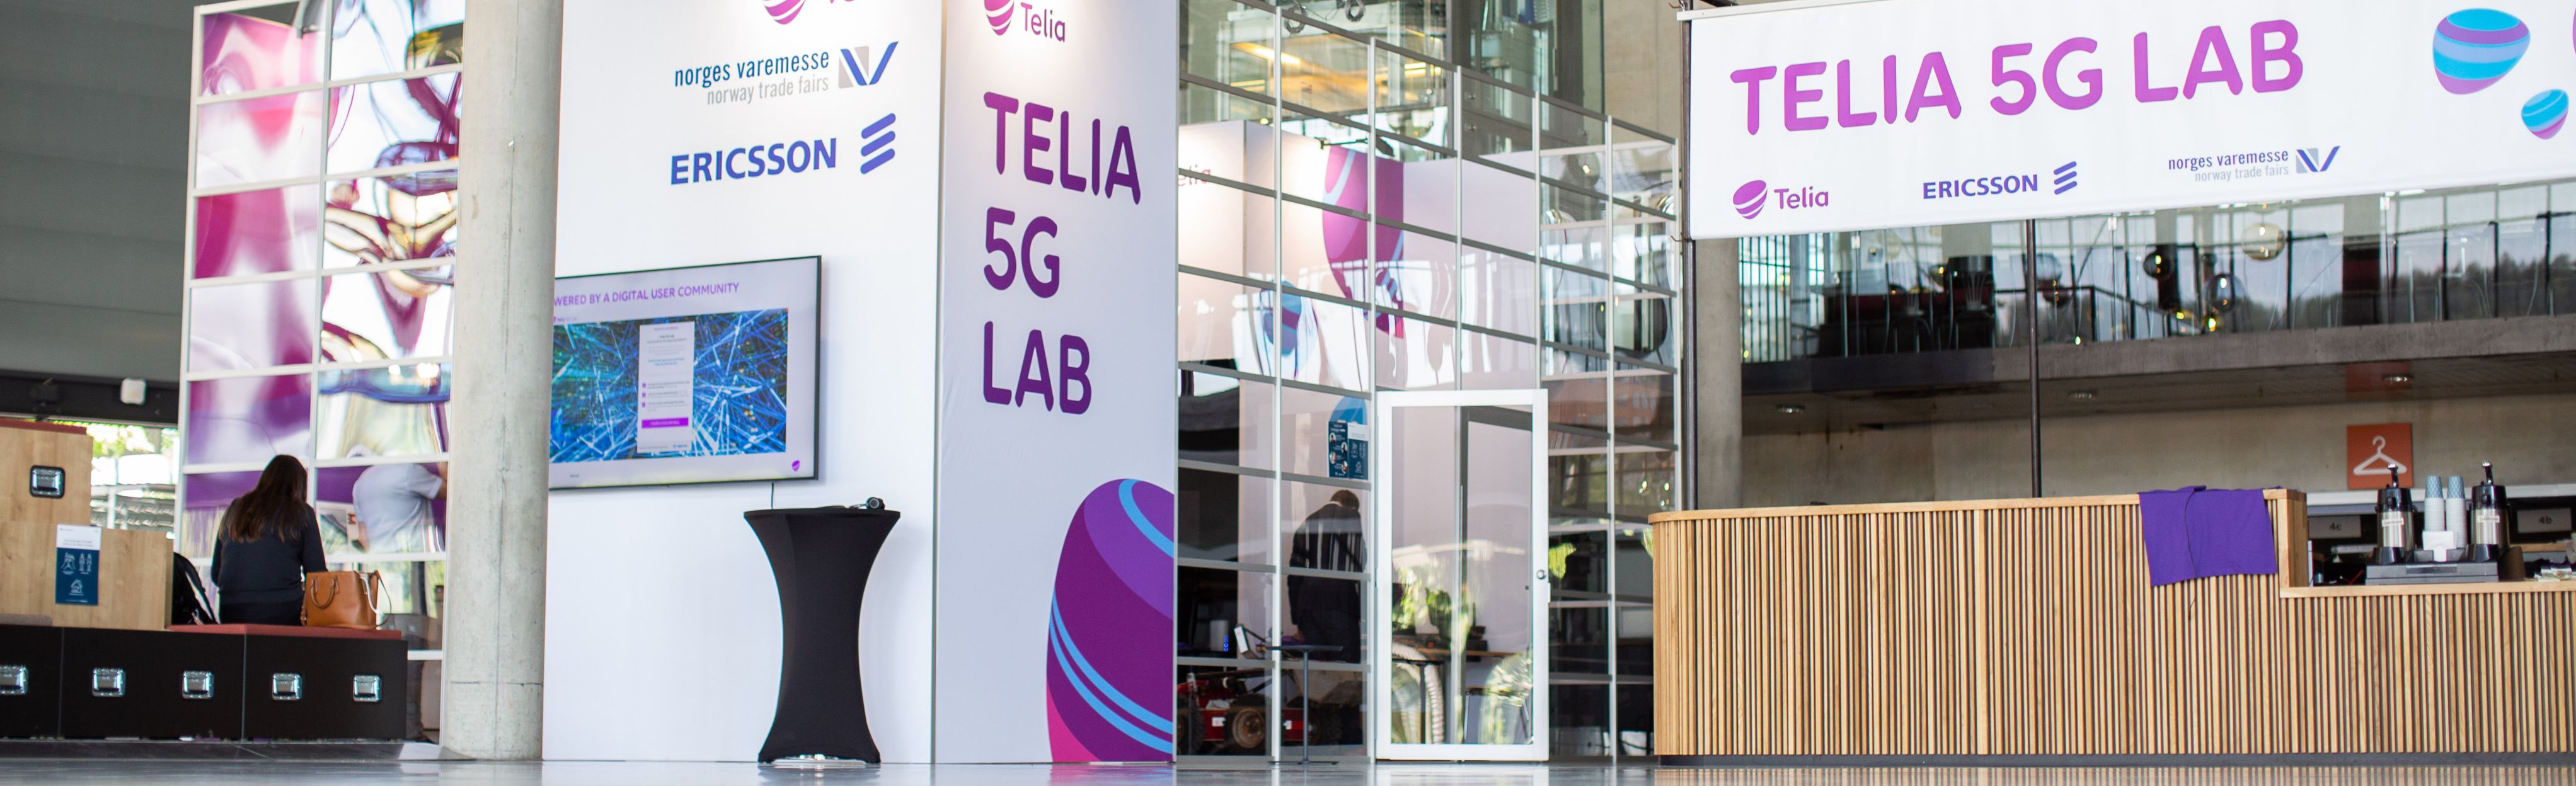 Telia 5G Lab i messehallen på Lillestrøm